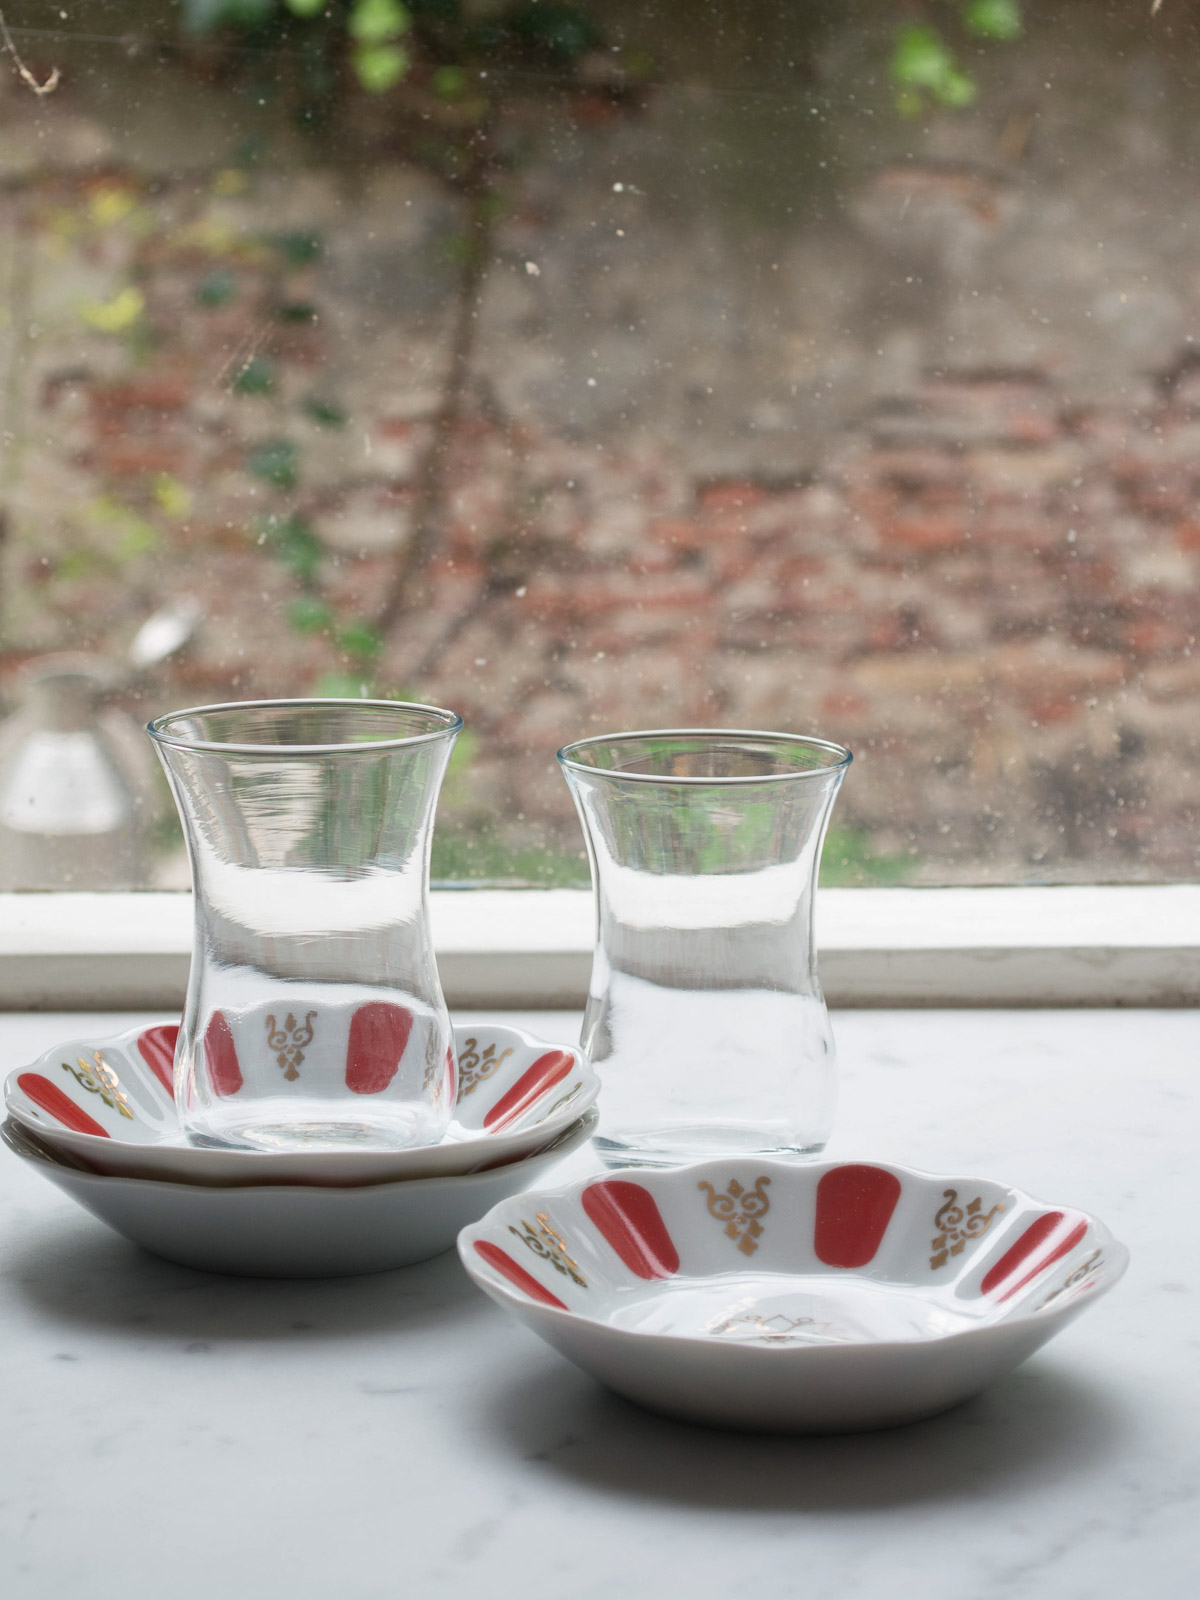 piattino in porcellana, rosso - Bicchieri da tè turchi - vetreria